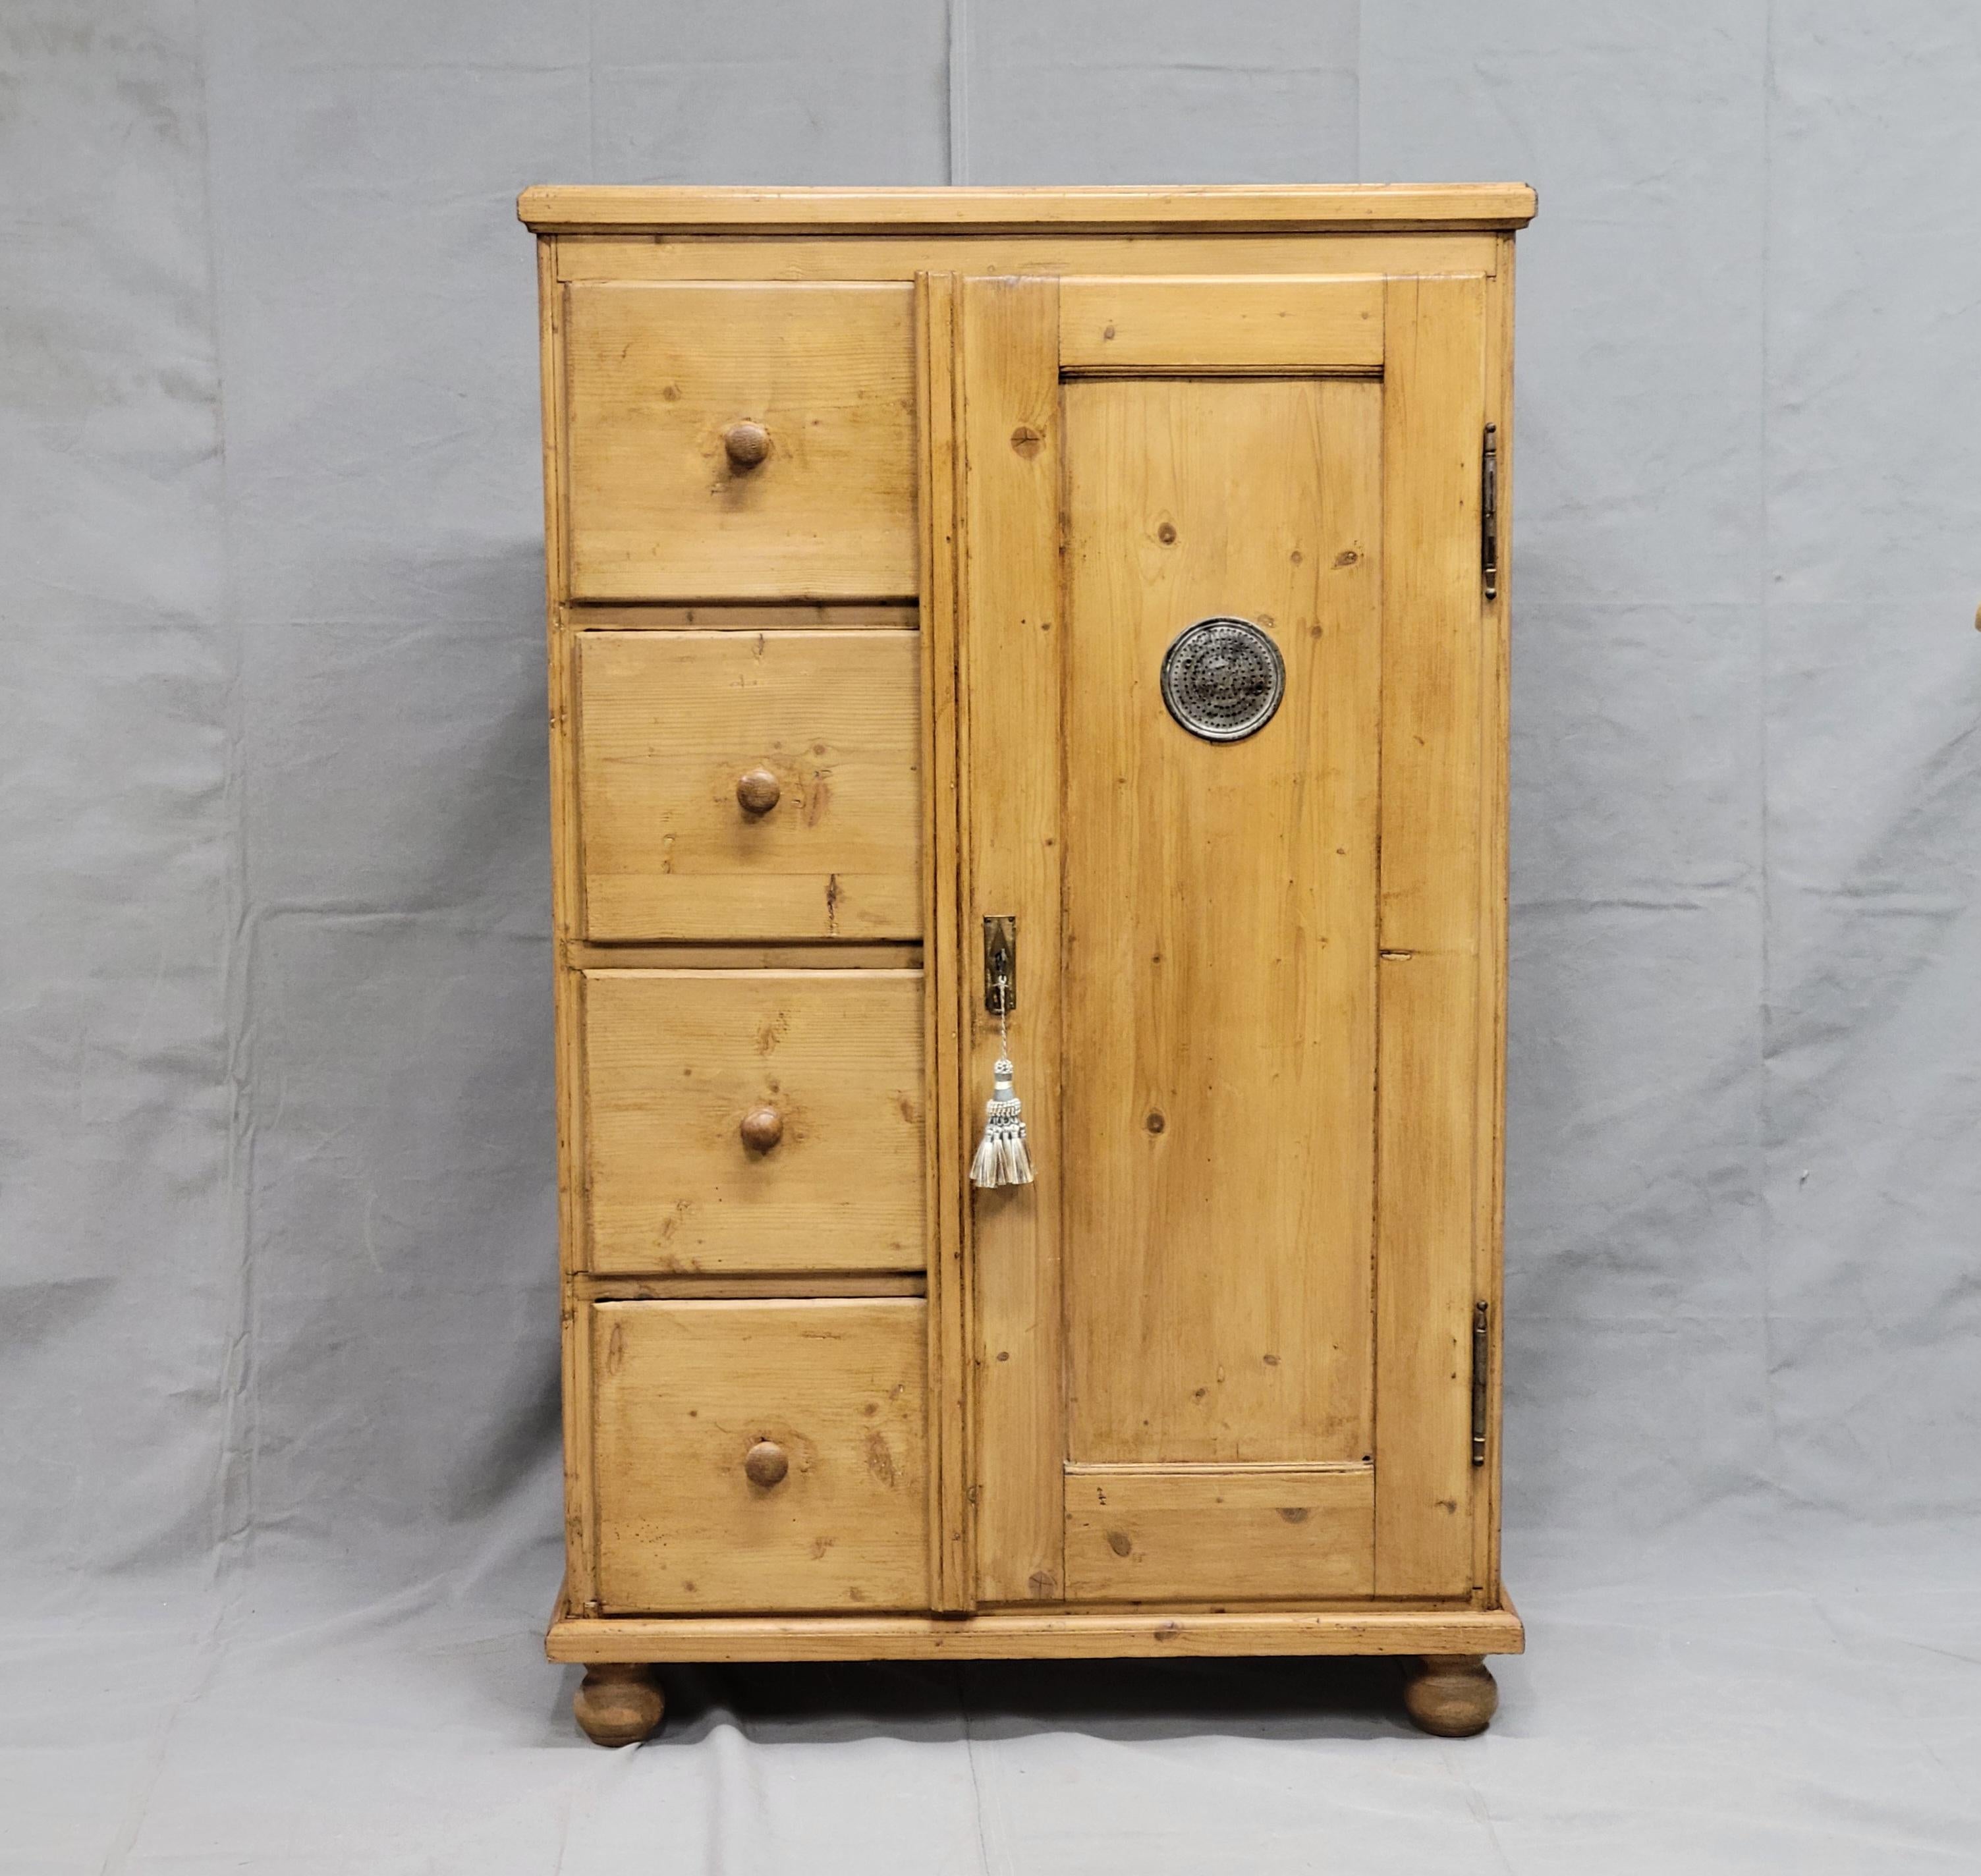 Magnifique armoire rustique en pin datant de la fin des années 1800 et provenant d'Europe de l'Est (Allemagne / République tchèque / Slovaquie). Ces armoires étaient utilisées dans les cuisines avant l'apparition de la réfrigération. Il est en bon